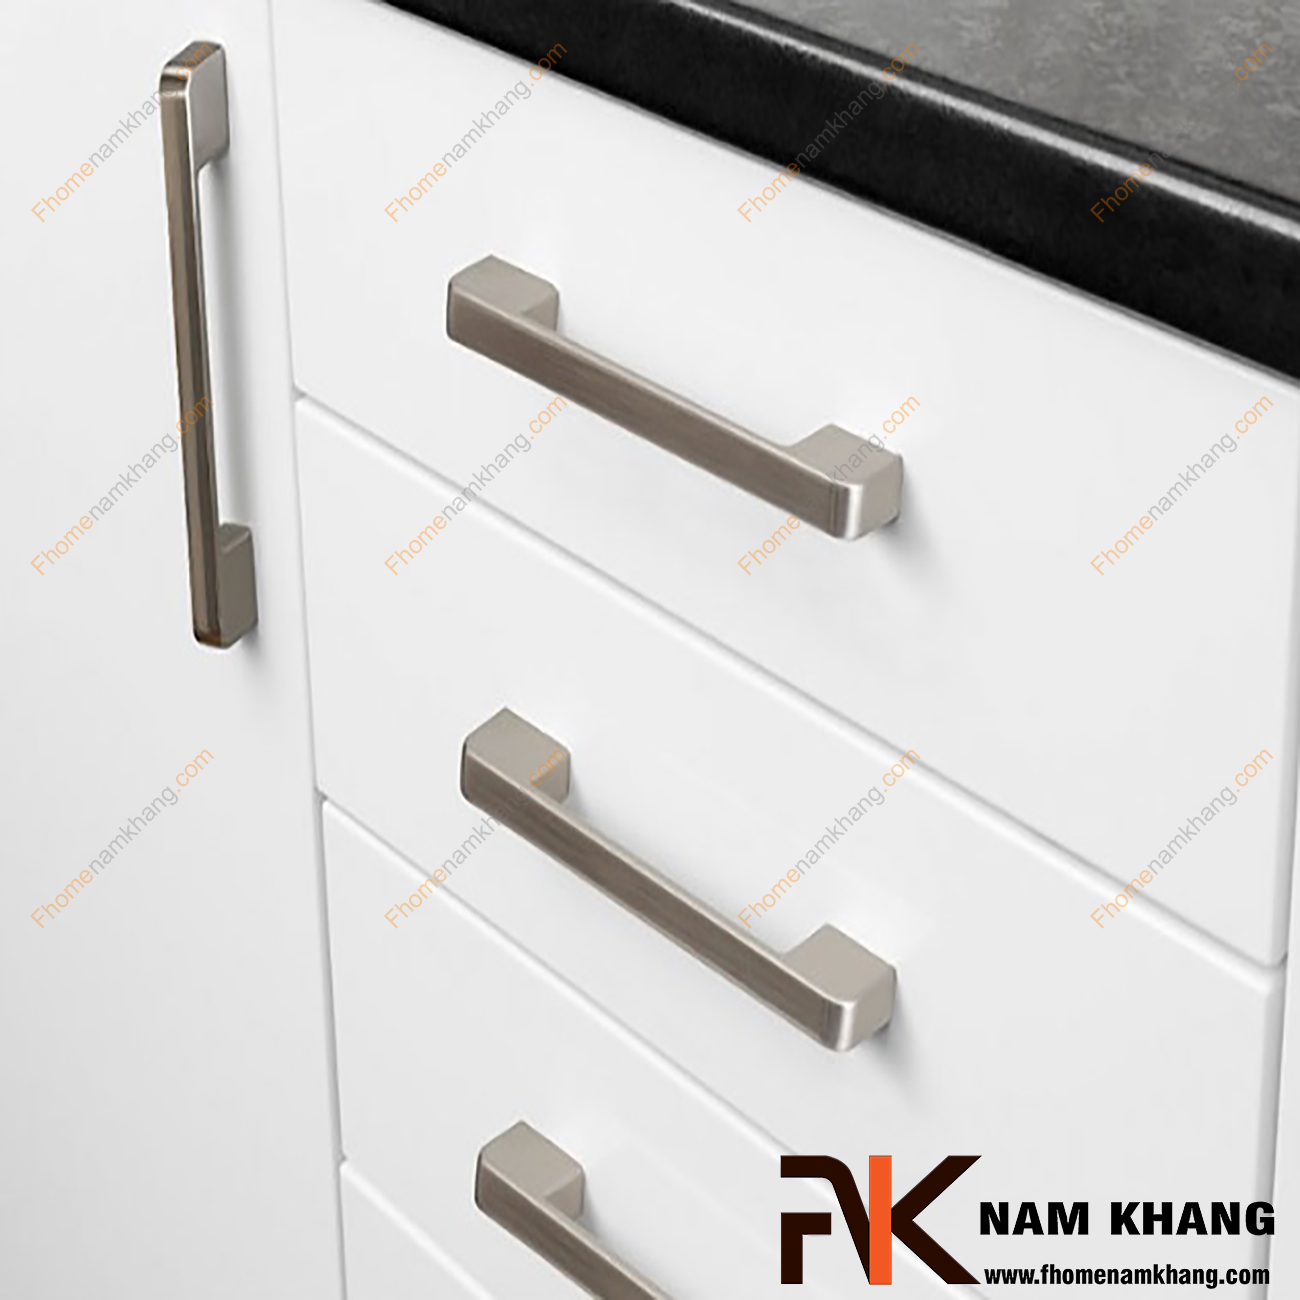 Tay nắm tủ mạ xám bạc NK143-160X được thiết kế dựa trên hợp kim chất lượng khuôn dạng vuông tạo cảm giác cầm nắm vô cùng chắc chắn và thao tác thực hiện cũng vô cùng dễ dàng.